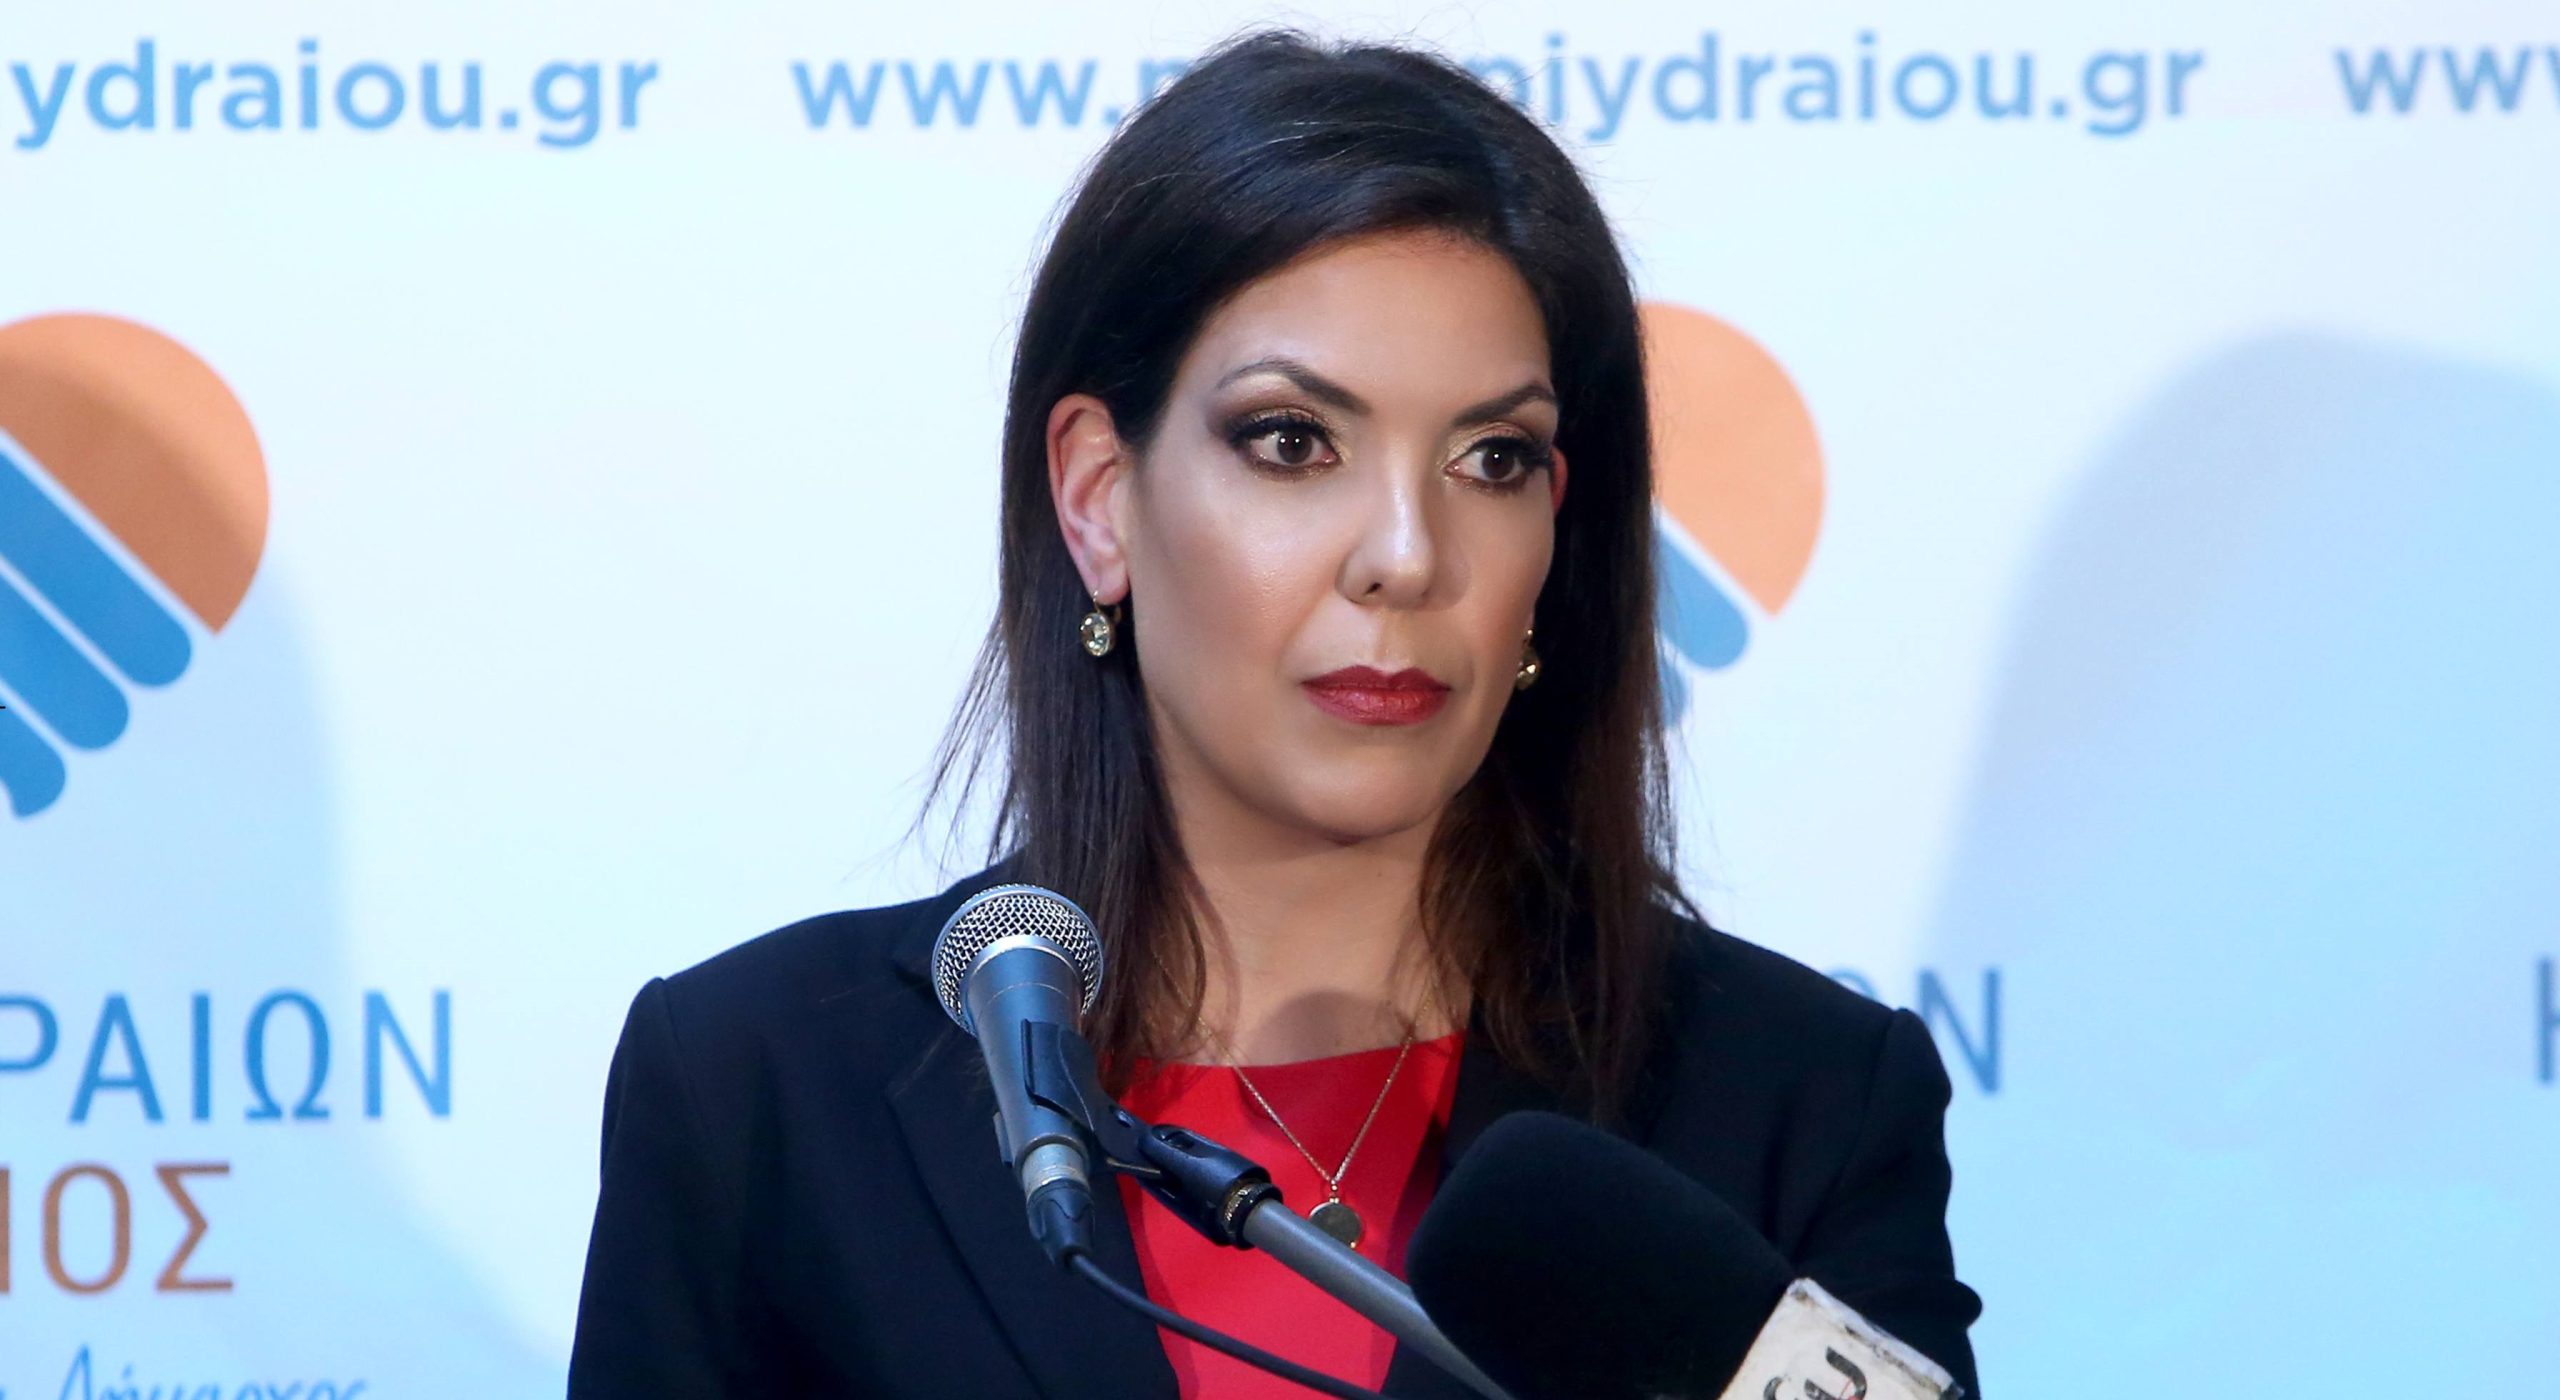 Κέρκυρα: Πρώτη δήμαρχος η εγγονή του Καποδίστρια – Γυναίκα δήμαρχος ξανά μετά από 60 χρόνια